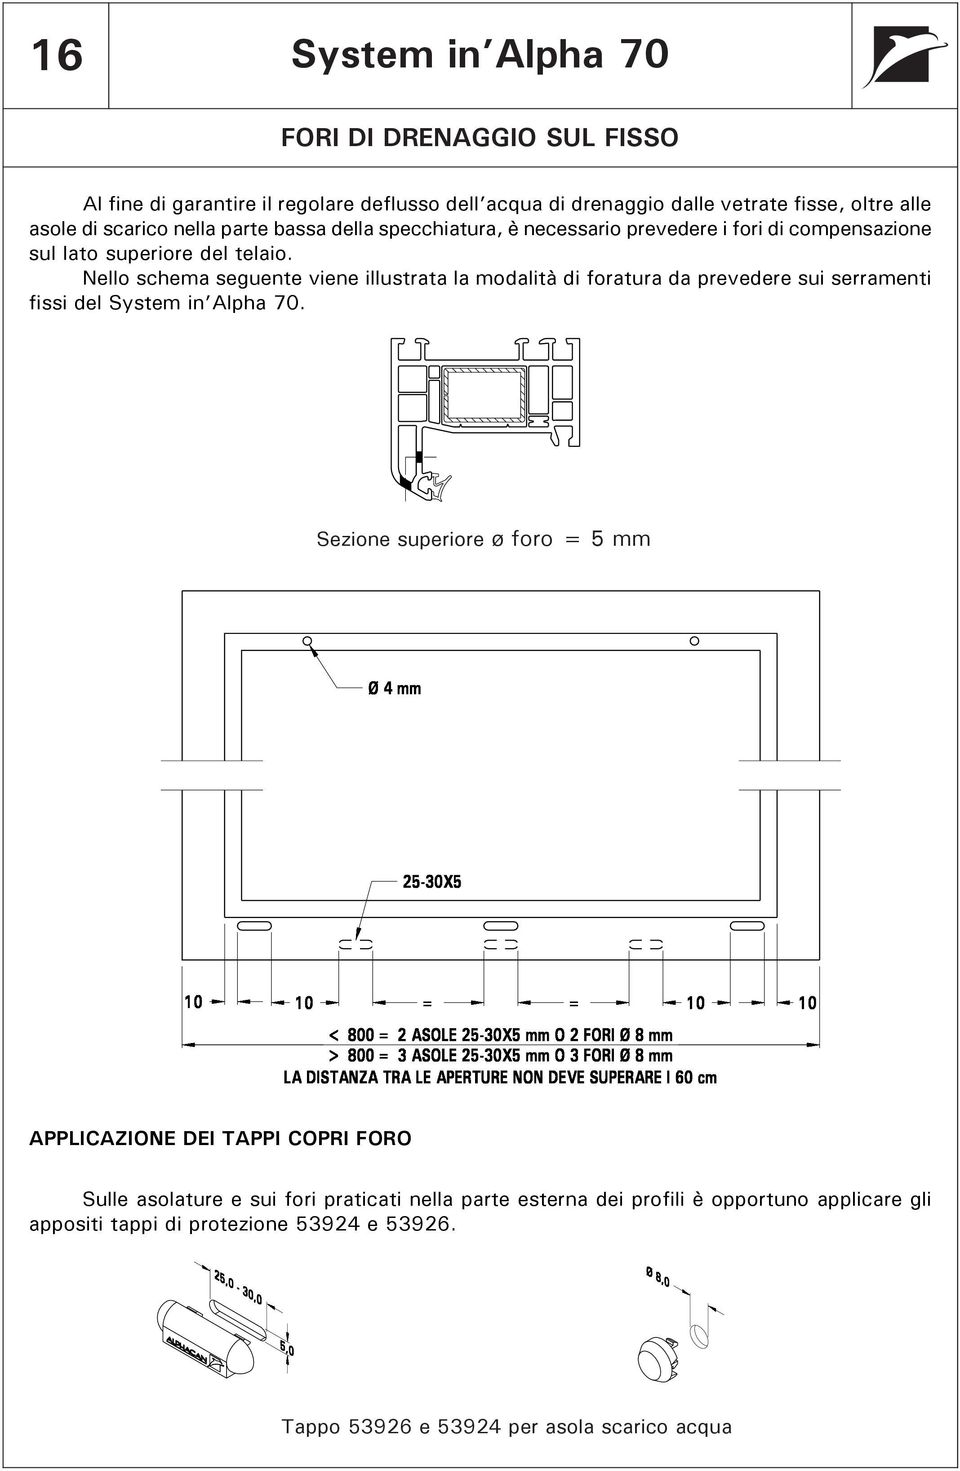 Nello schema seguente viene illustrata la modalità di foratura da prevedere sui serramenti fissi del System in Alpha 70.